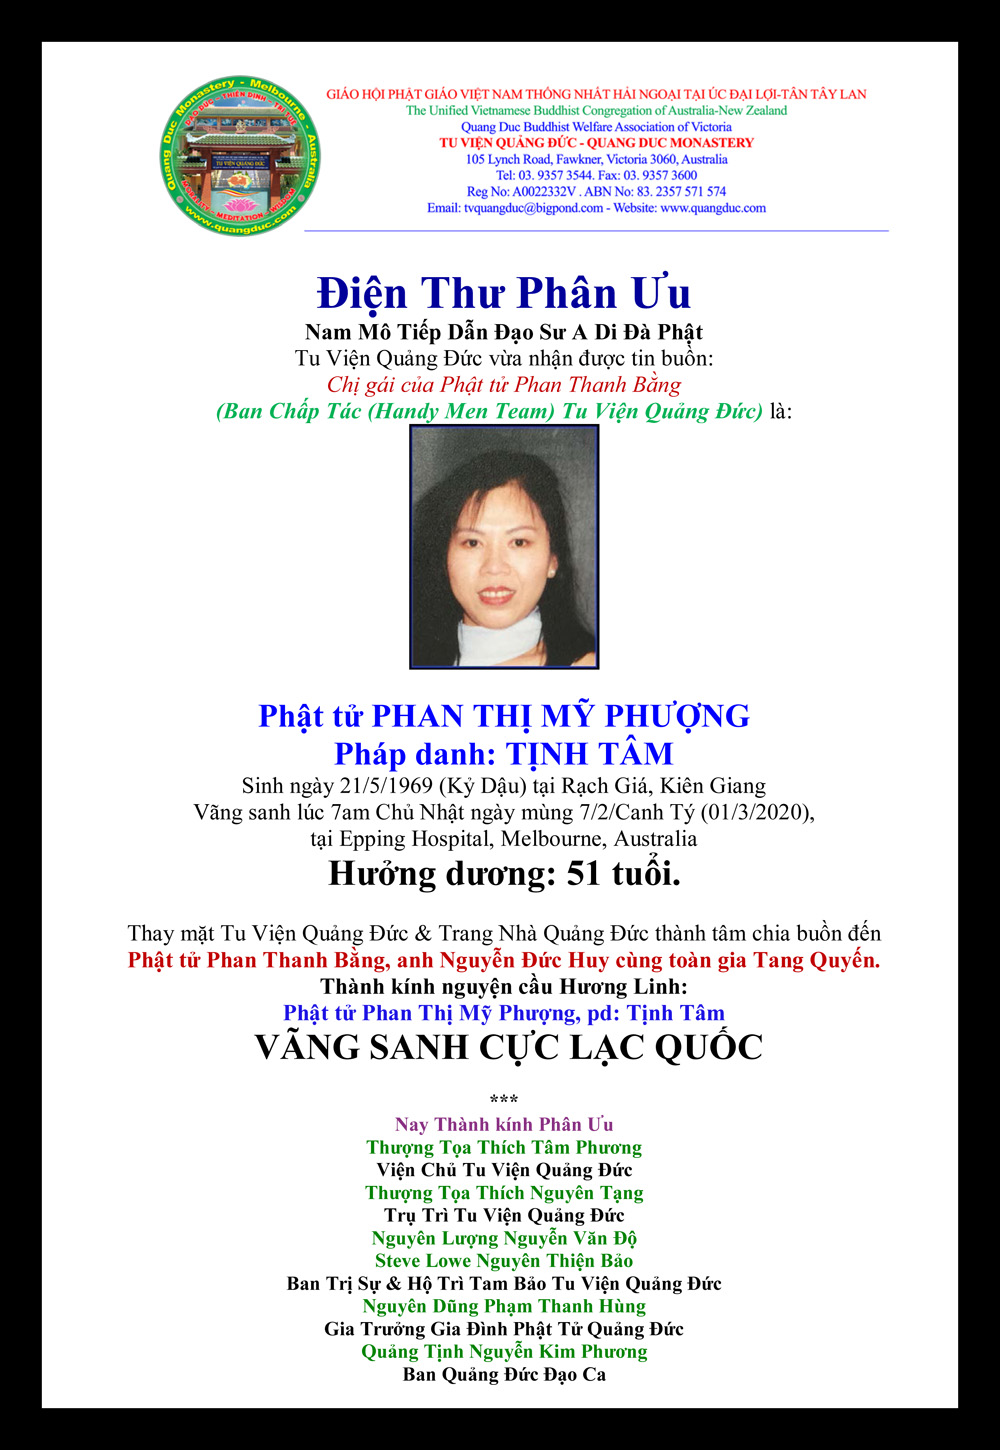 Phan Uu_Gia dinh_ Phan Thi My Phuong-1969-2020